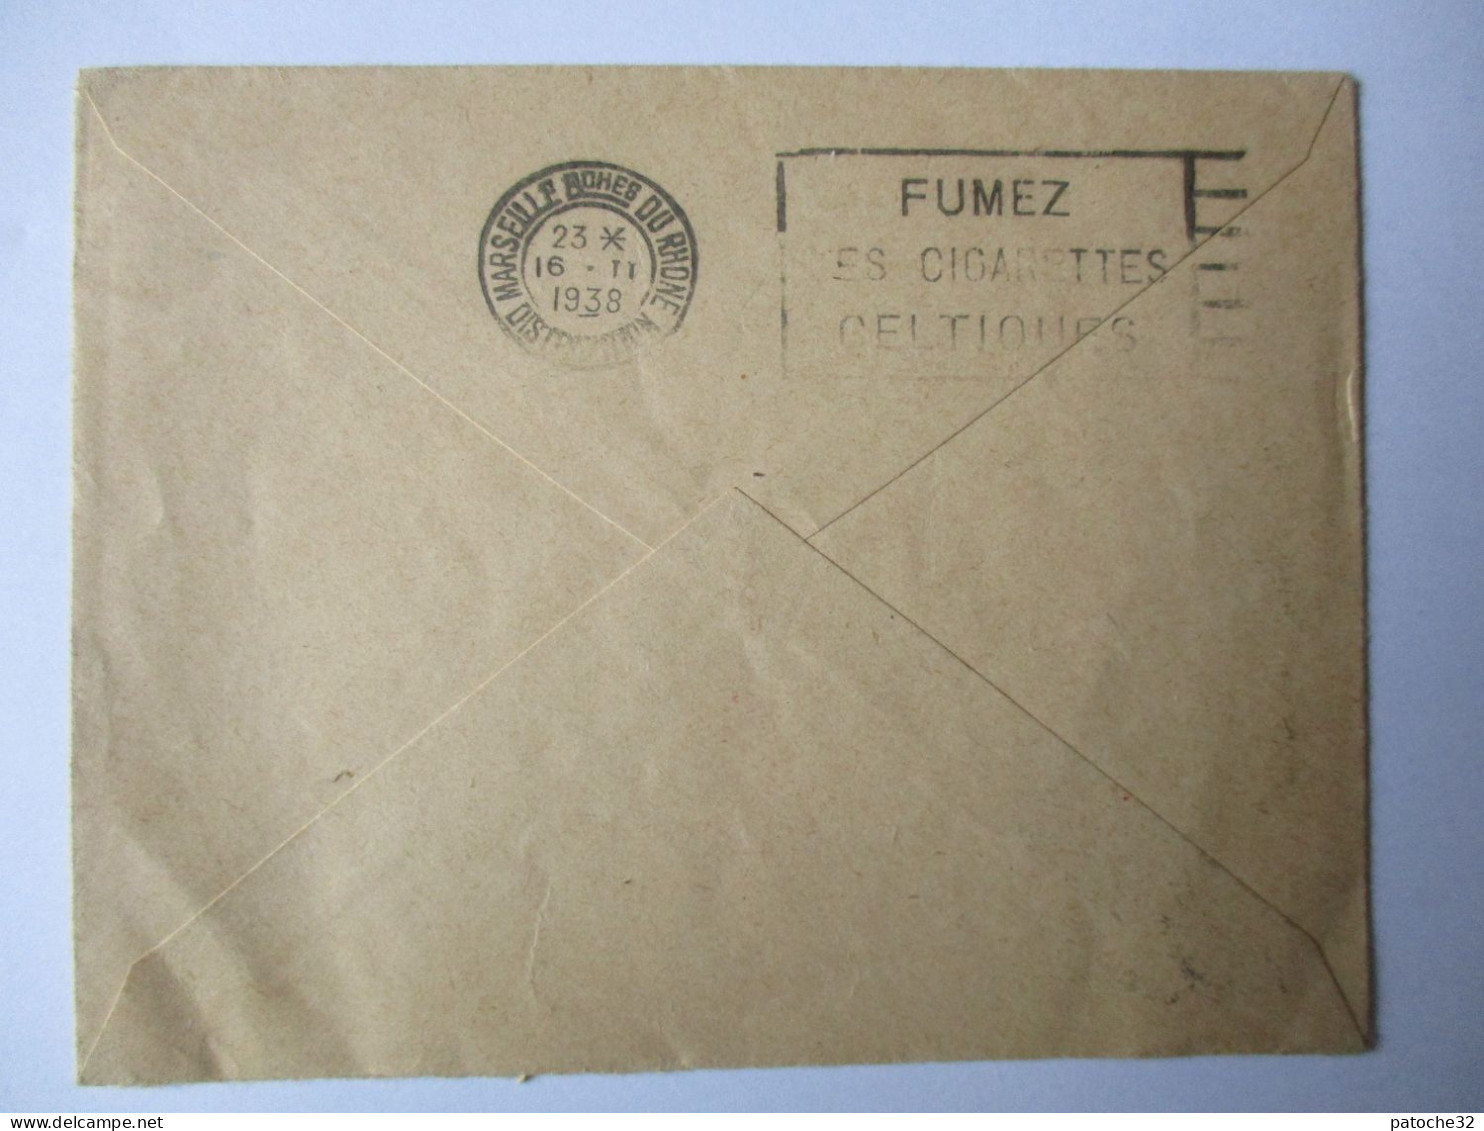 Enveloppe..ligne Postale Aérienne Paris-Nice..inauguration 16 Février 1938..adressé A La Comp Géné Transatlantique - 1927-1959 Briefe & Dokumente